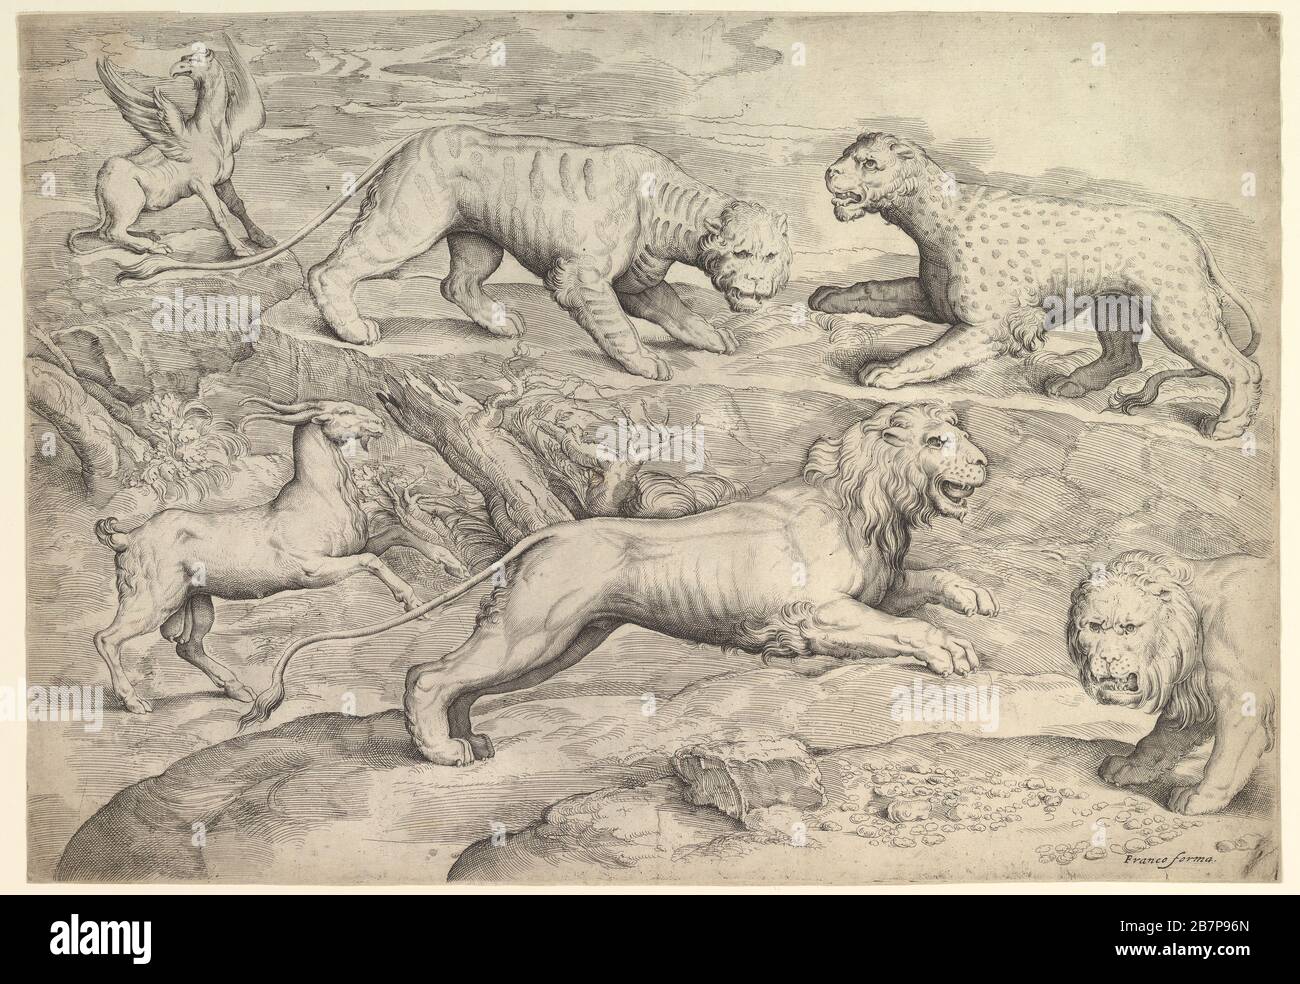 Sechs Tiere, darunter Löwen, ein Tiger, ein Leopard, ein griffin und eine Ziege, können etwa sein. 1530-61. Stockfoto